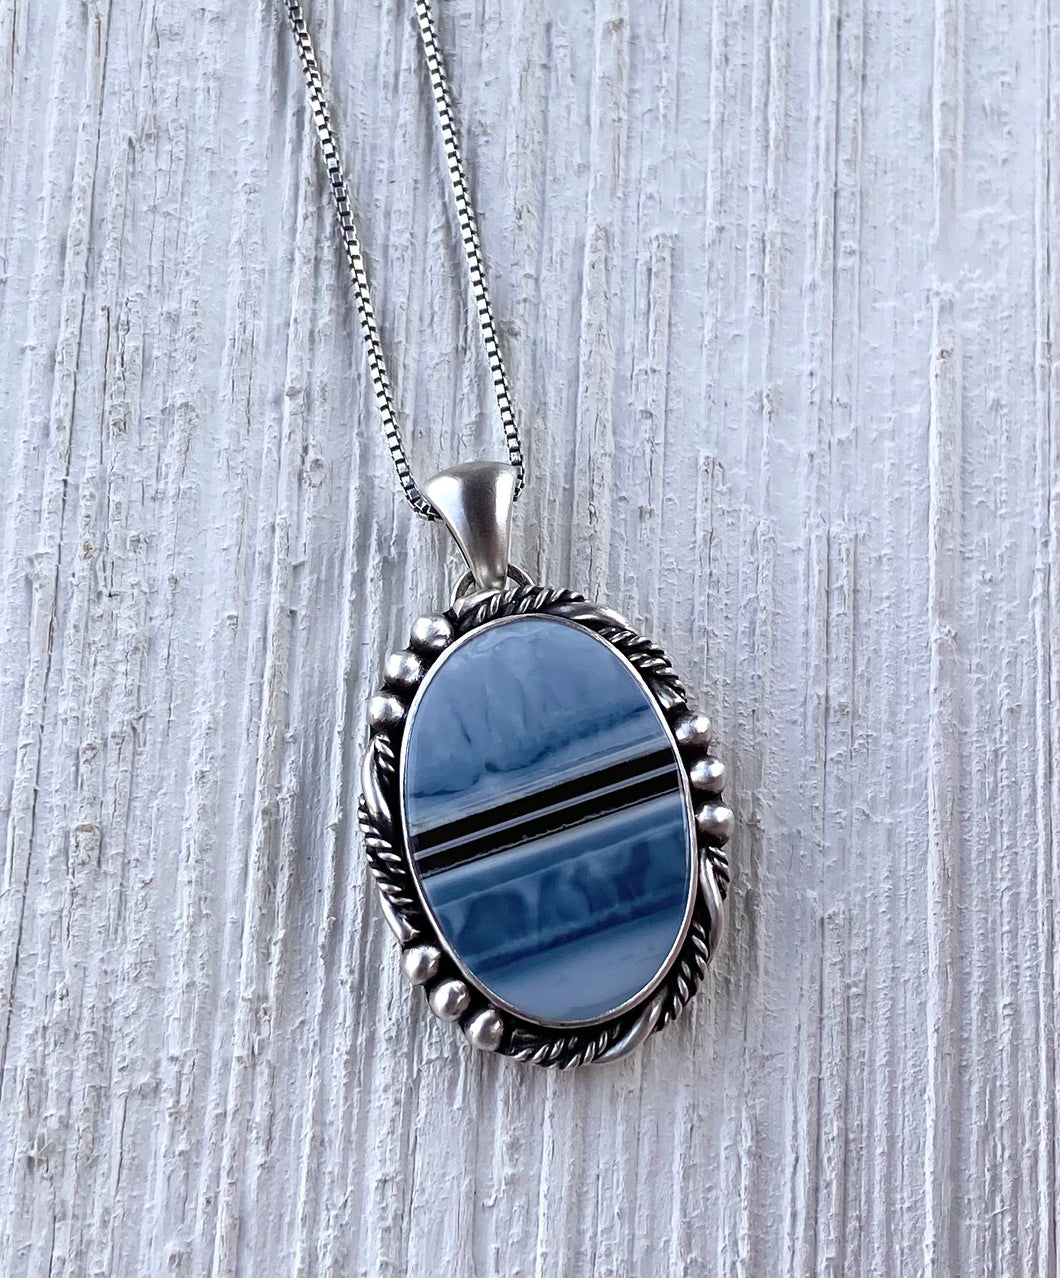 Reserved: Owyhee Blue Opal Pendant